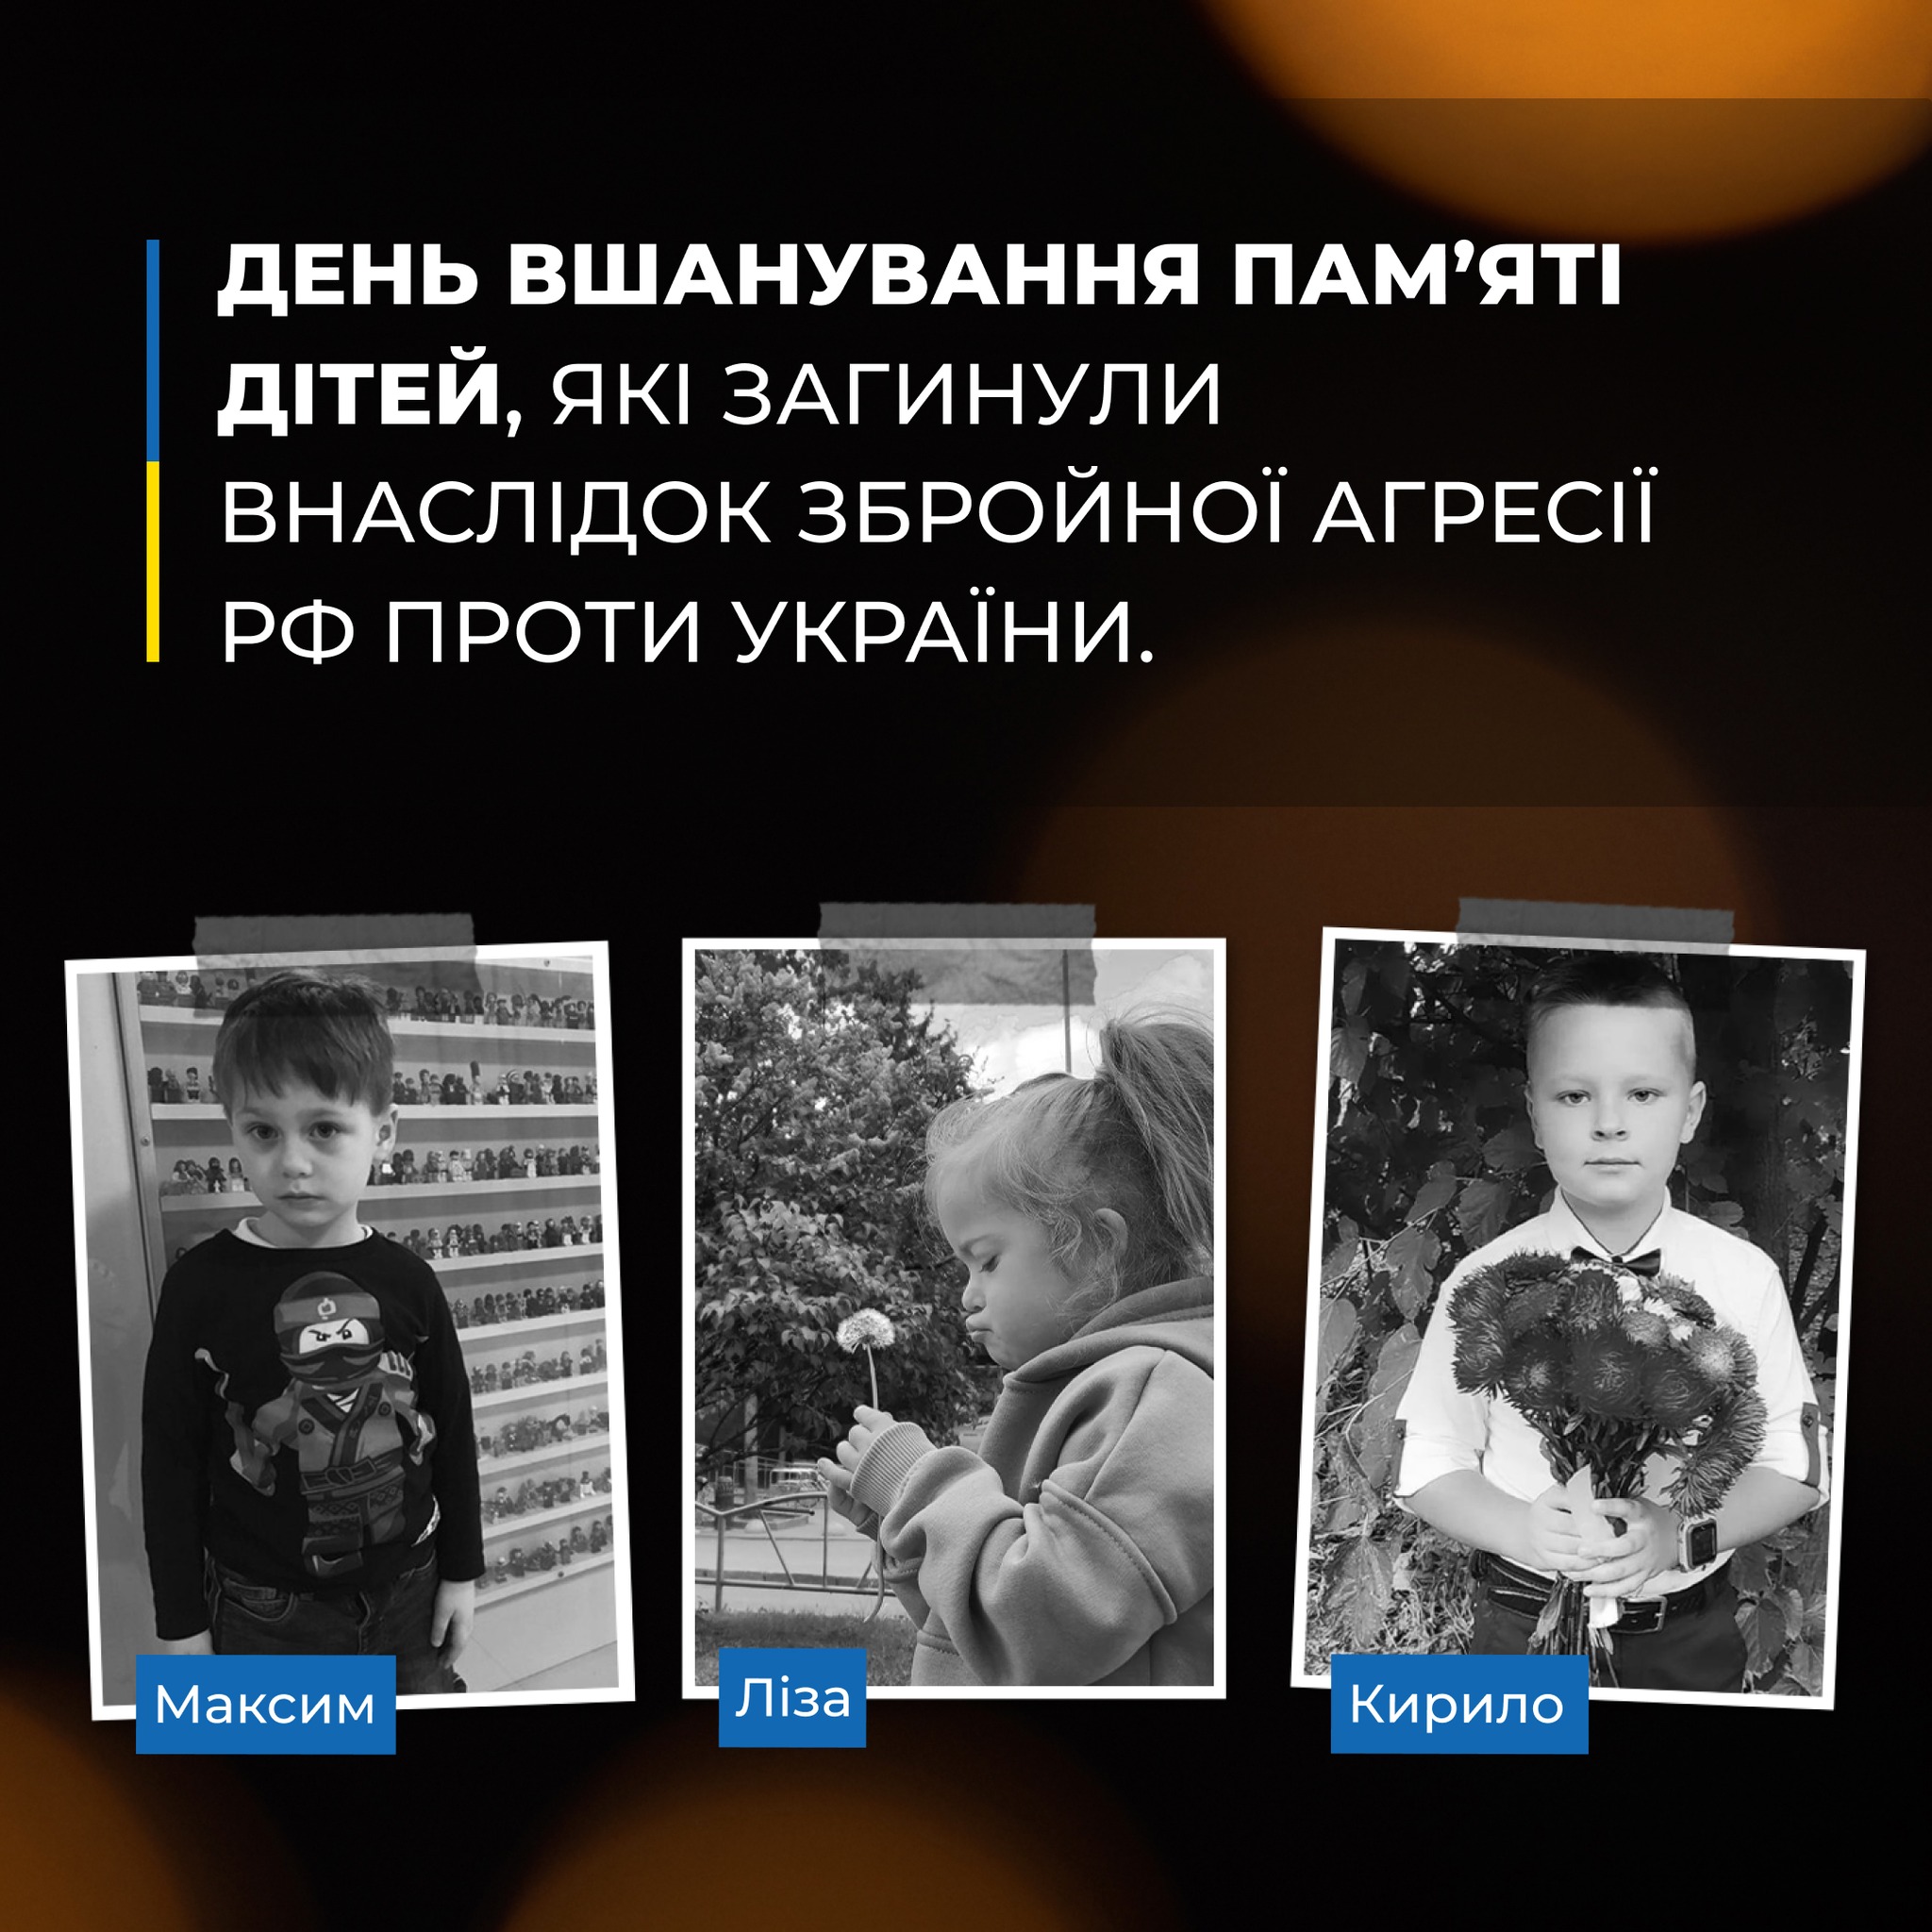 Загиблі маленькі вінничани внаслідок ракетного удару росіян. Світлина з сайту ВІнницької обласної ради